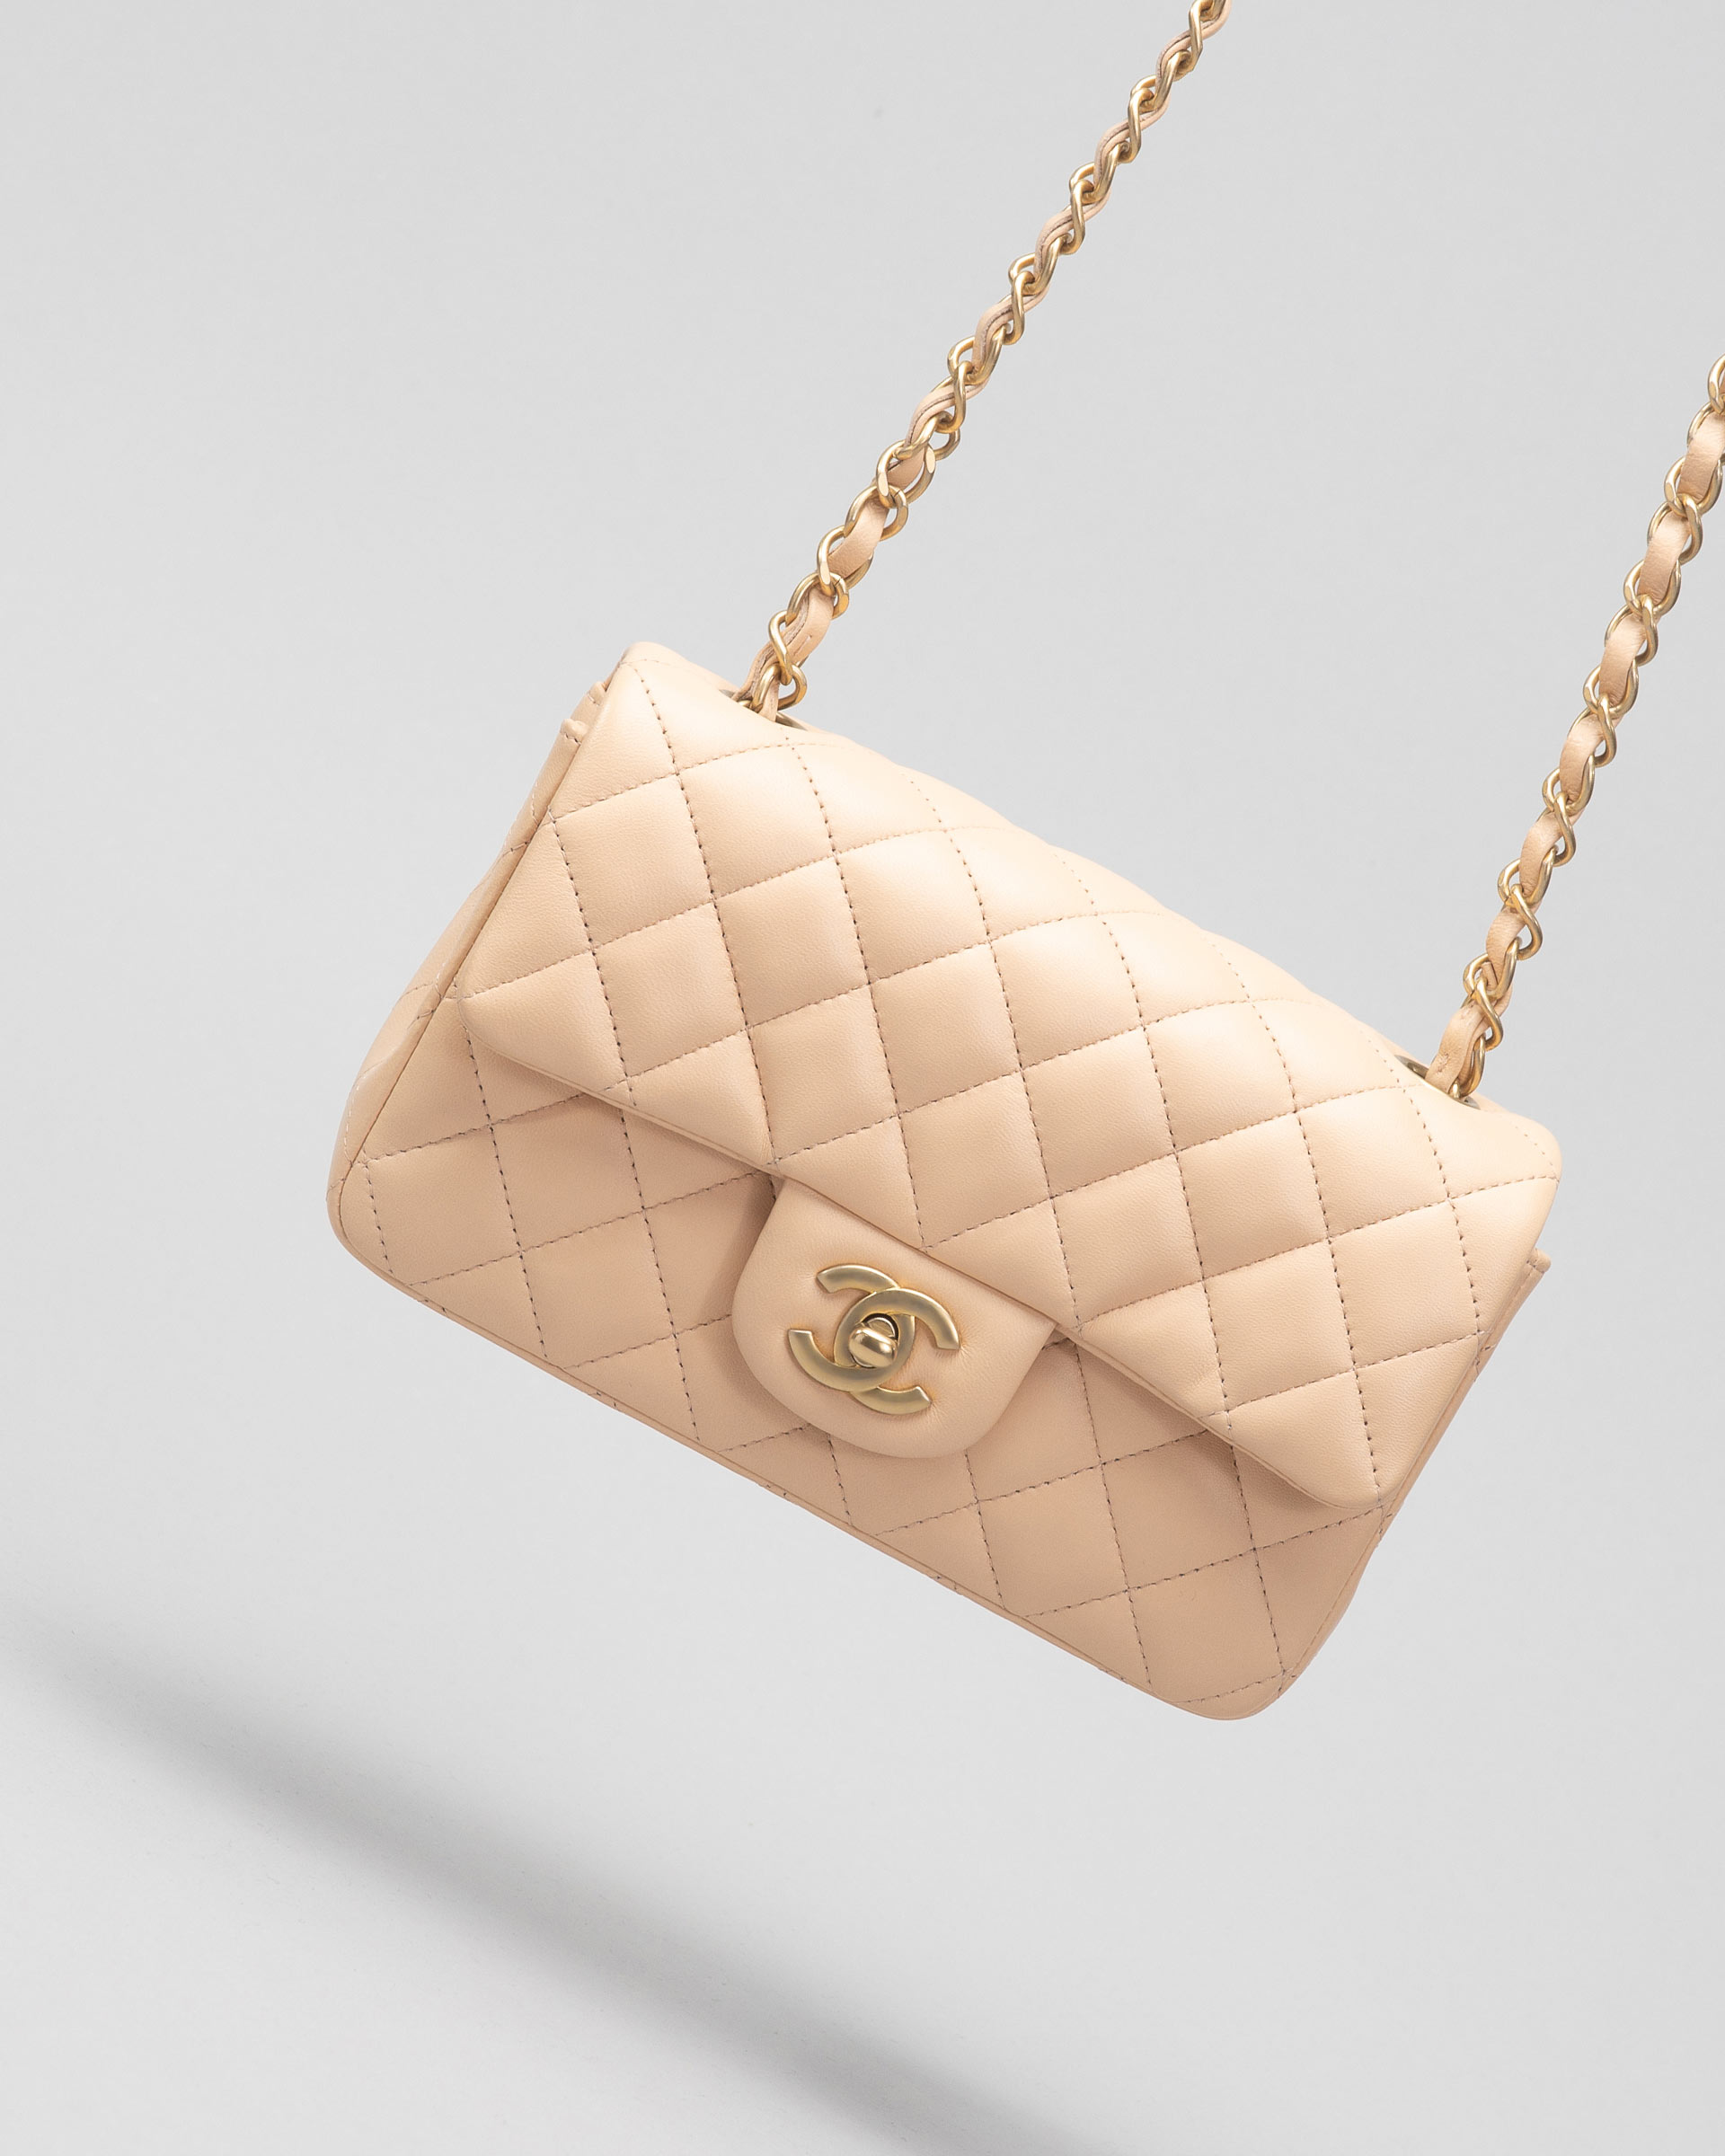 Lauren Goodger accused of flogging a fake Chanel bag after doctoring  description  Mirror Online